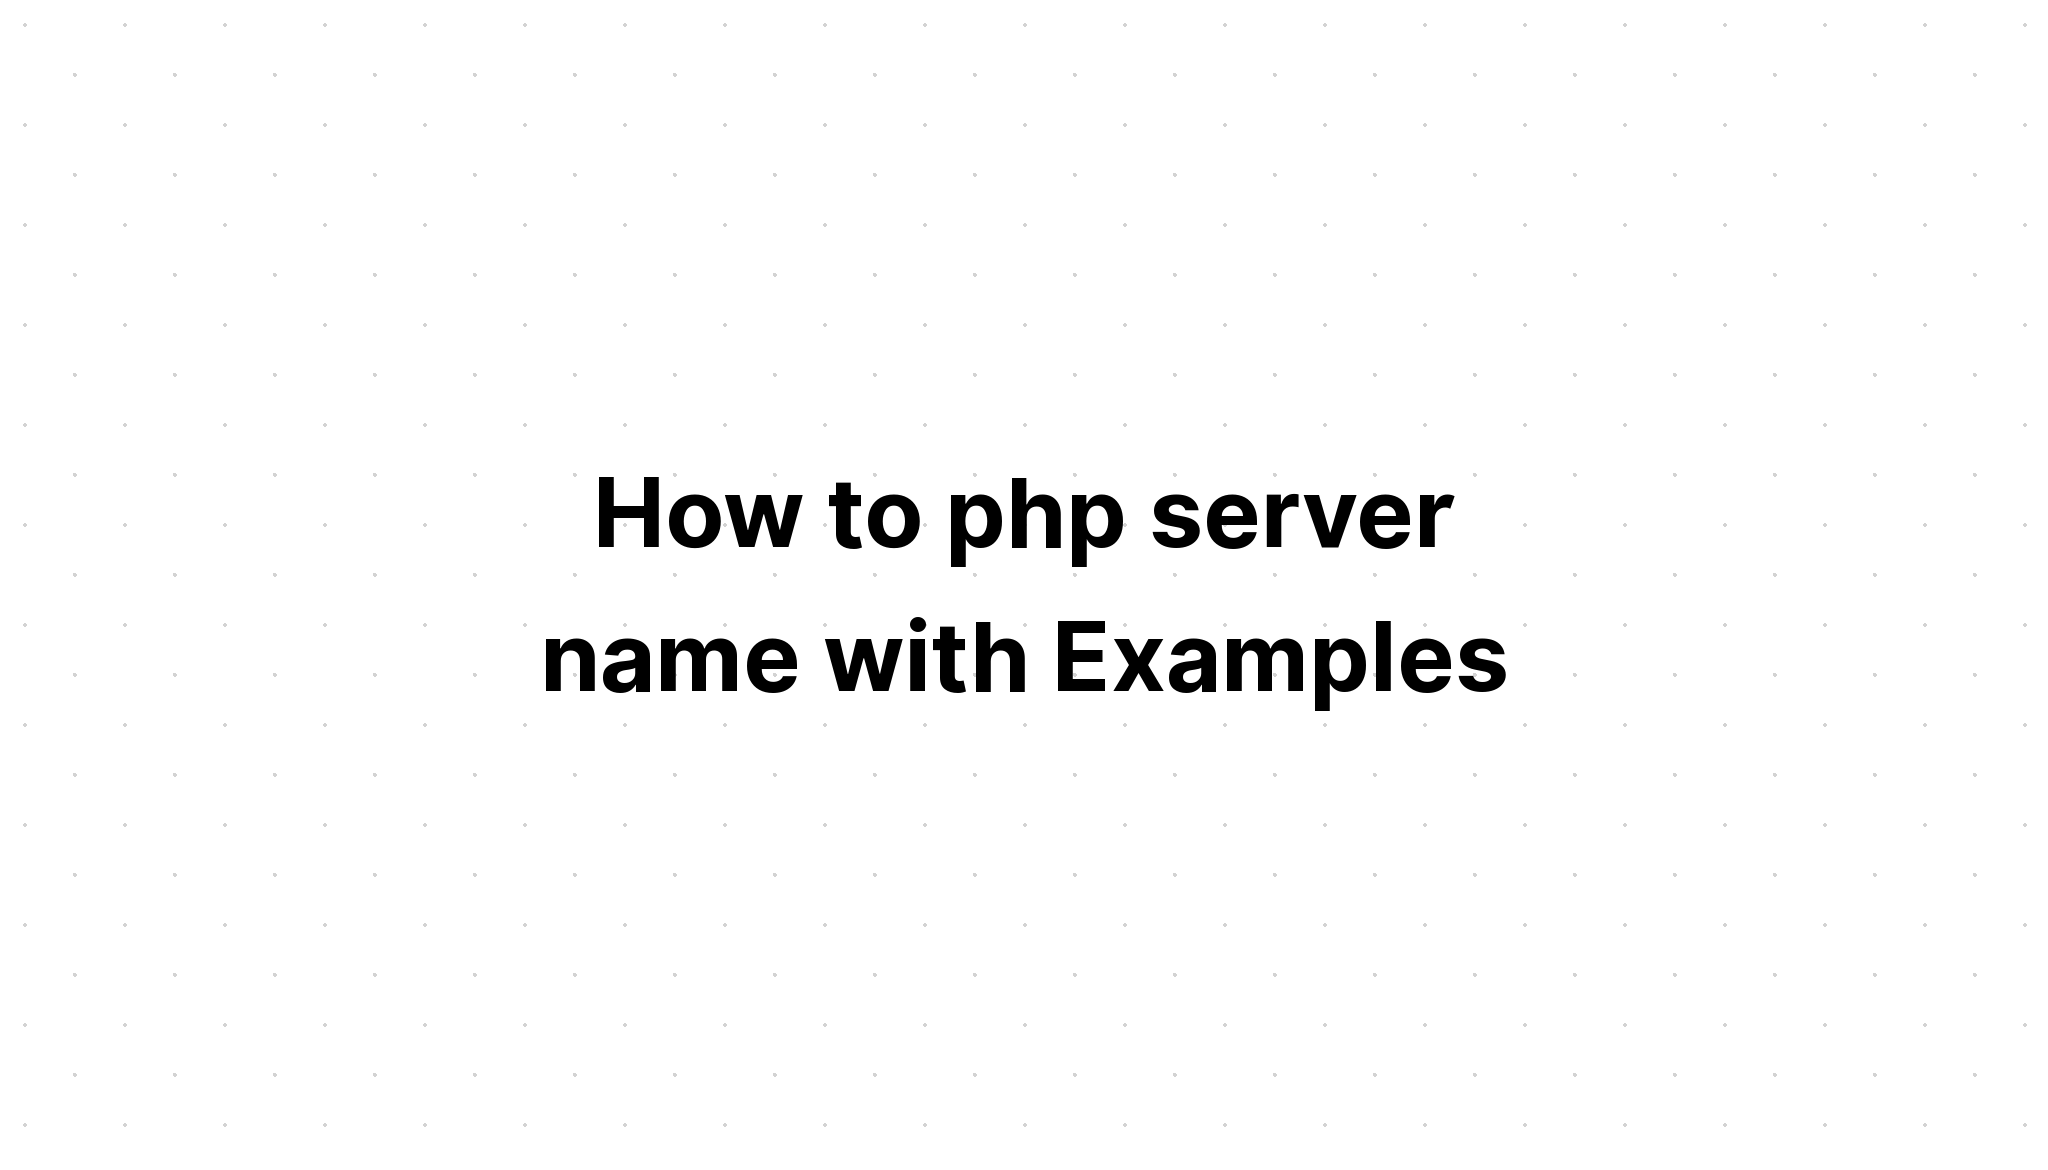 Cara php nama server dengan Contoh